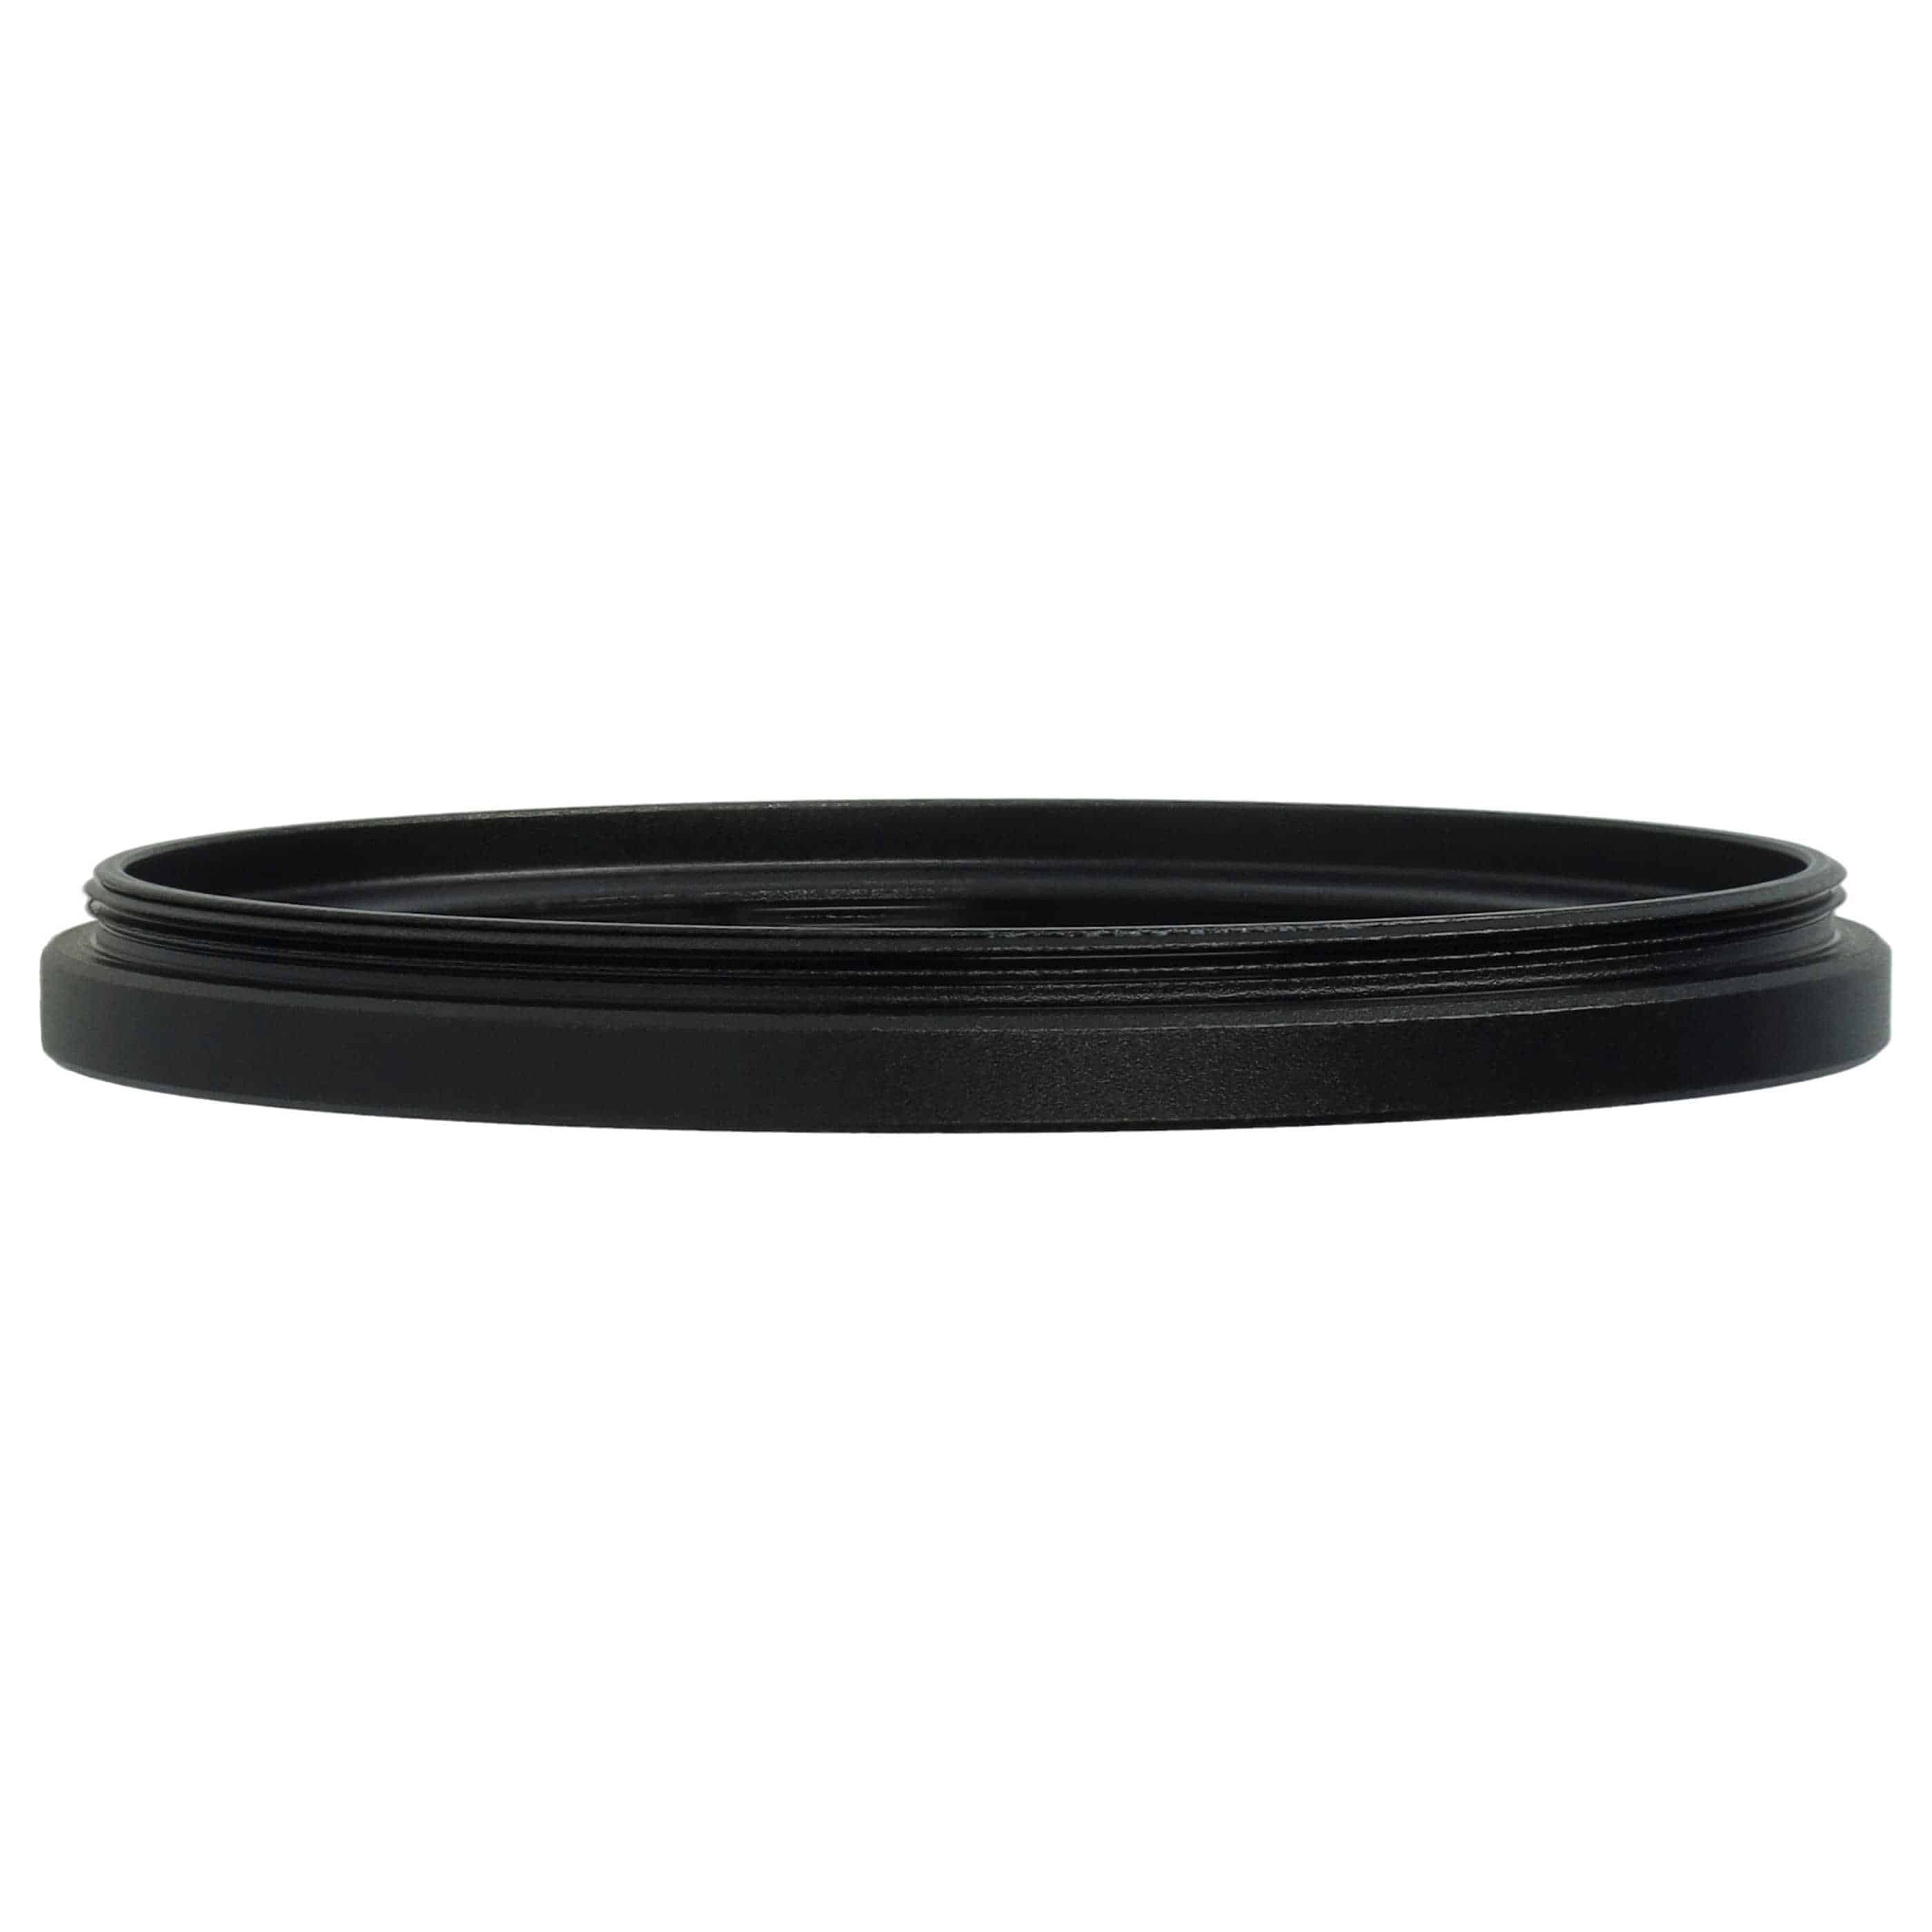 Redukcja filtrowa adapter Step-Down 58 mm - 46 mm pasująca do obiektywu - metal, czarny